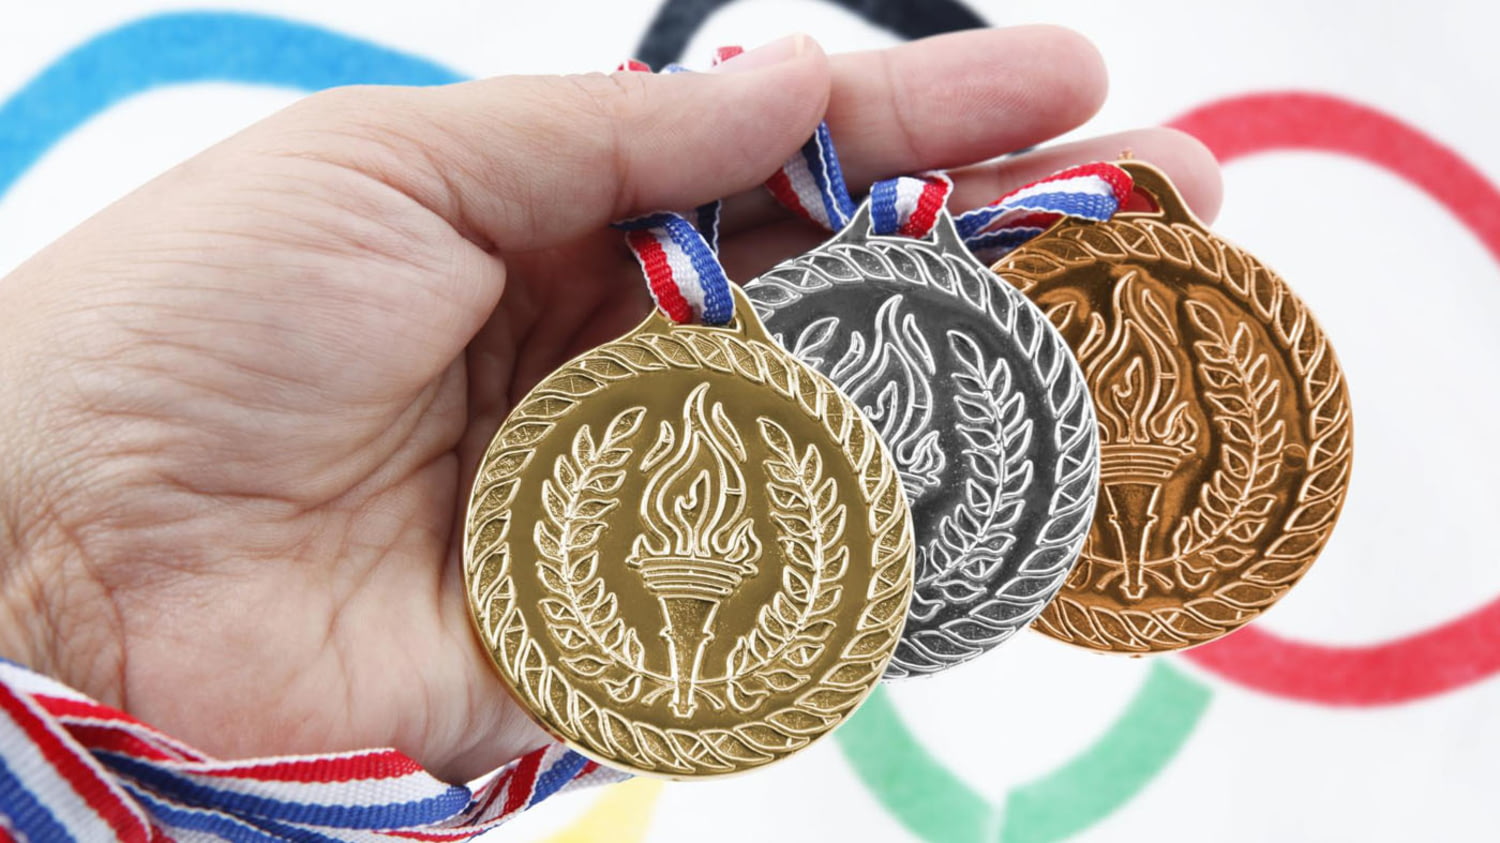 Medaillen mit Abbildung der olympischen Fackel